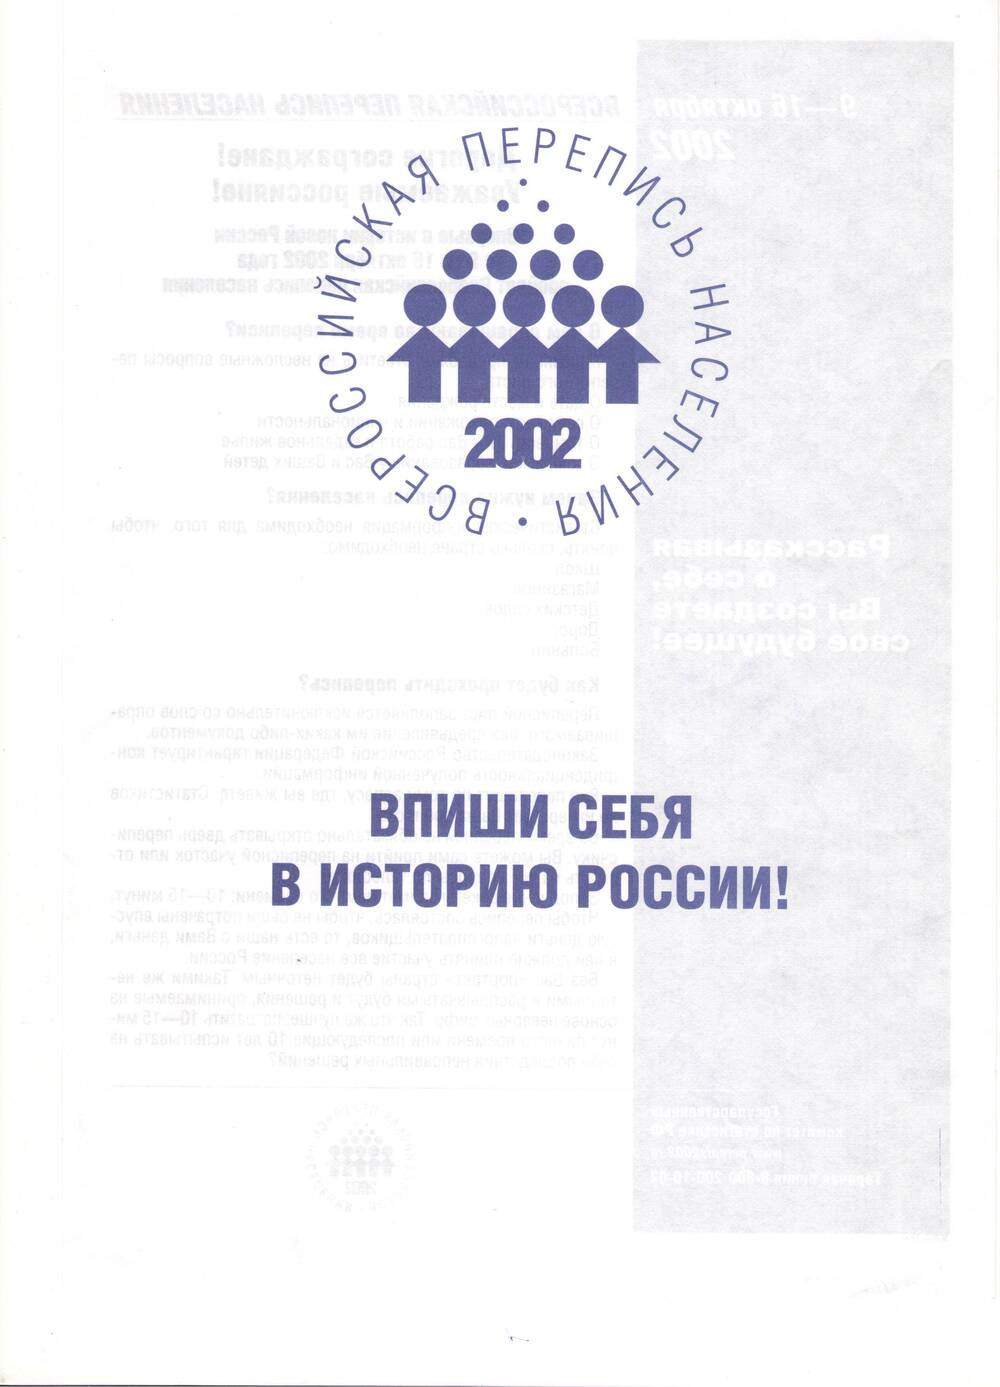 Листовка Всероссийской переписи населения 2002 г.